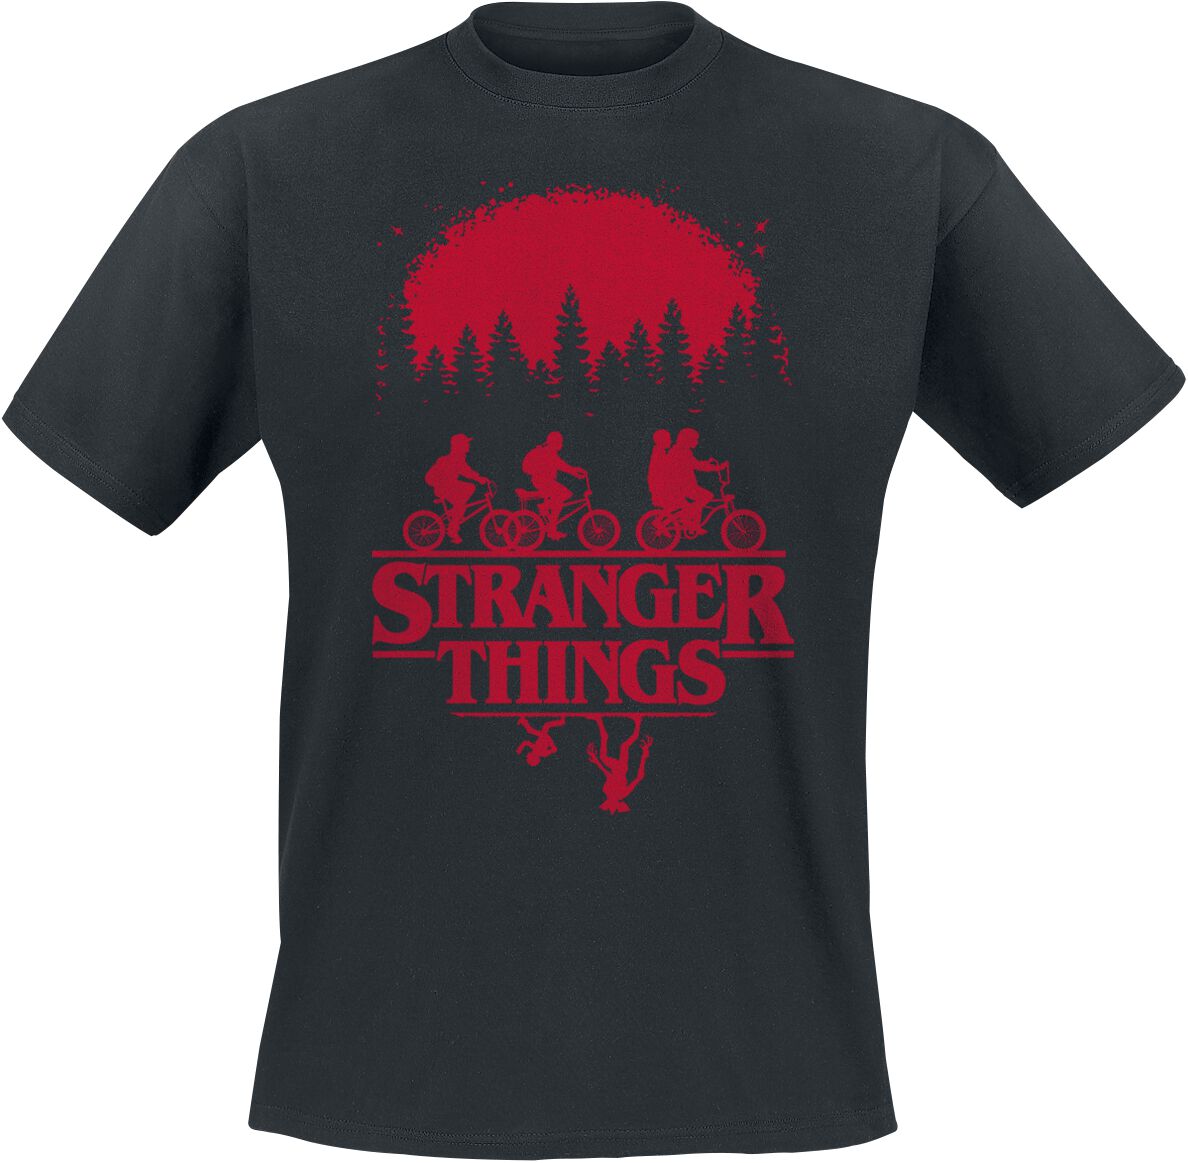 Stranger Things T-Shirt - Volume 1 - S bis 3XL - für Männer - Größe 3XL - schwarz  - Lizenzierter Fanartikel